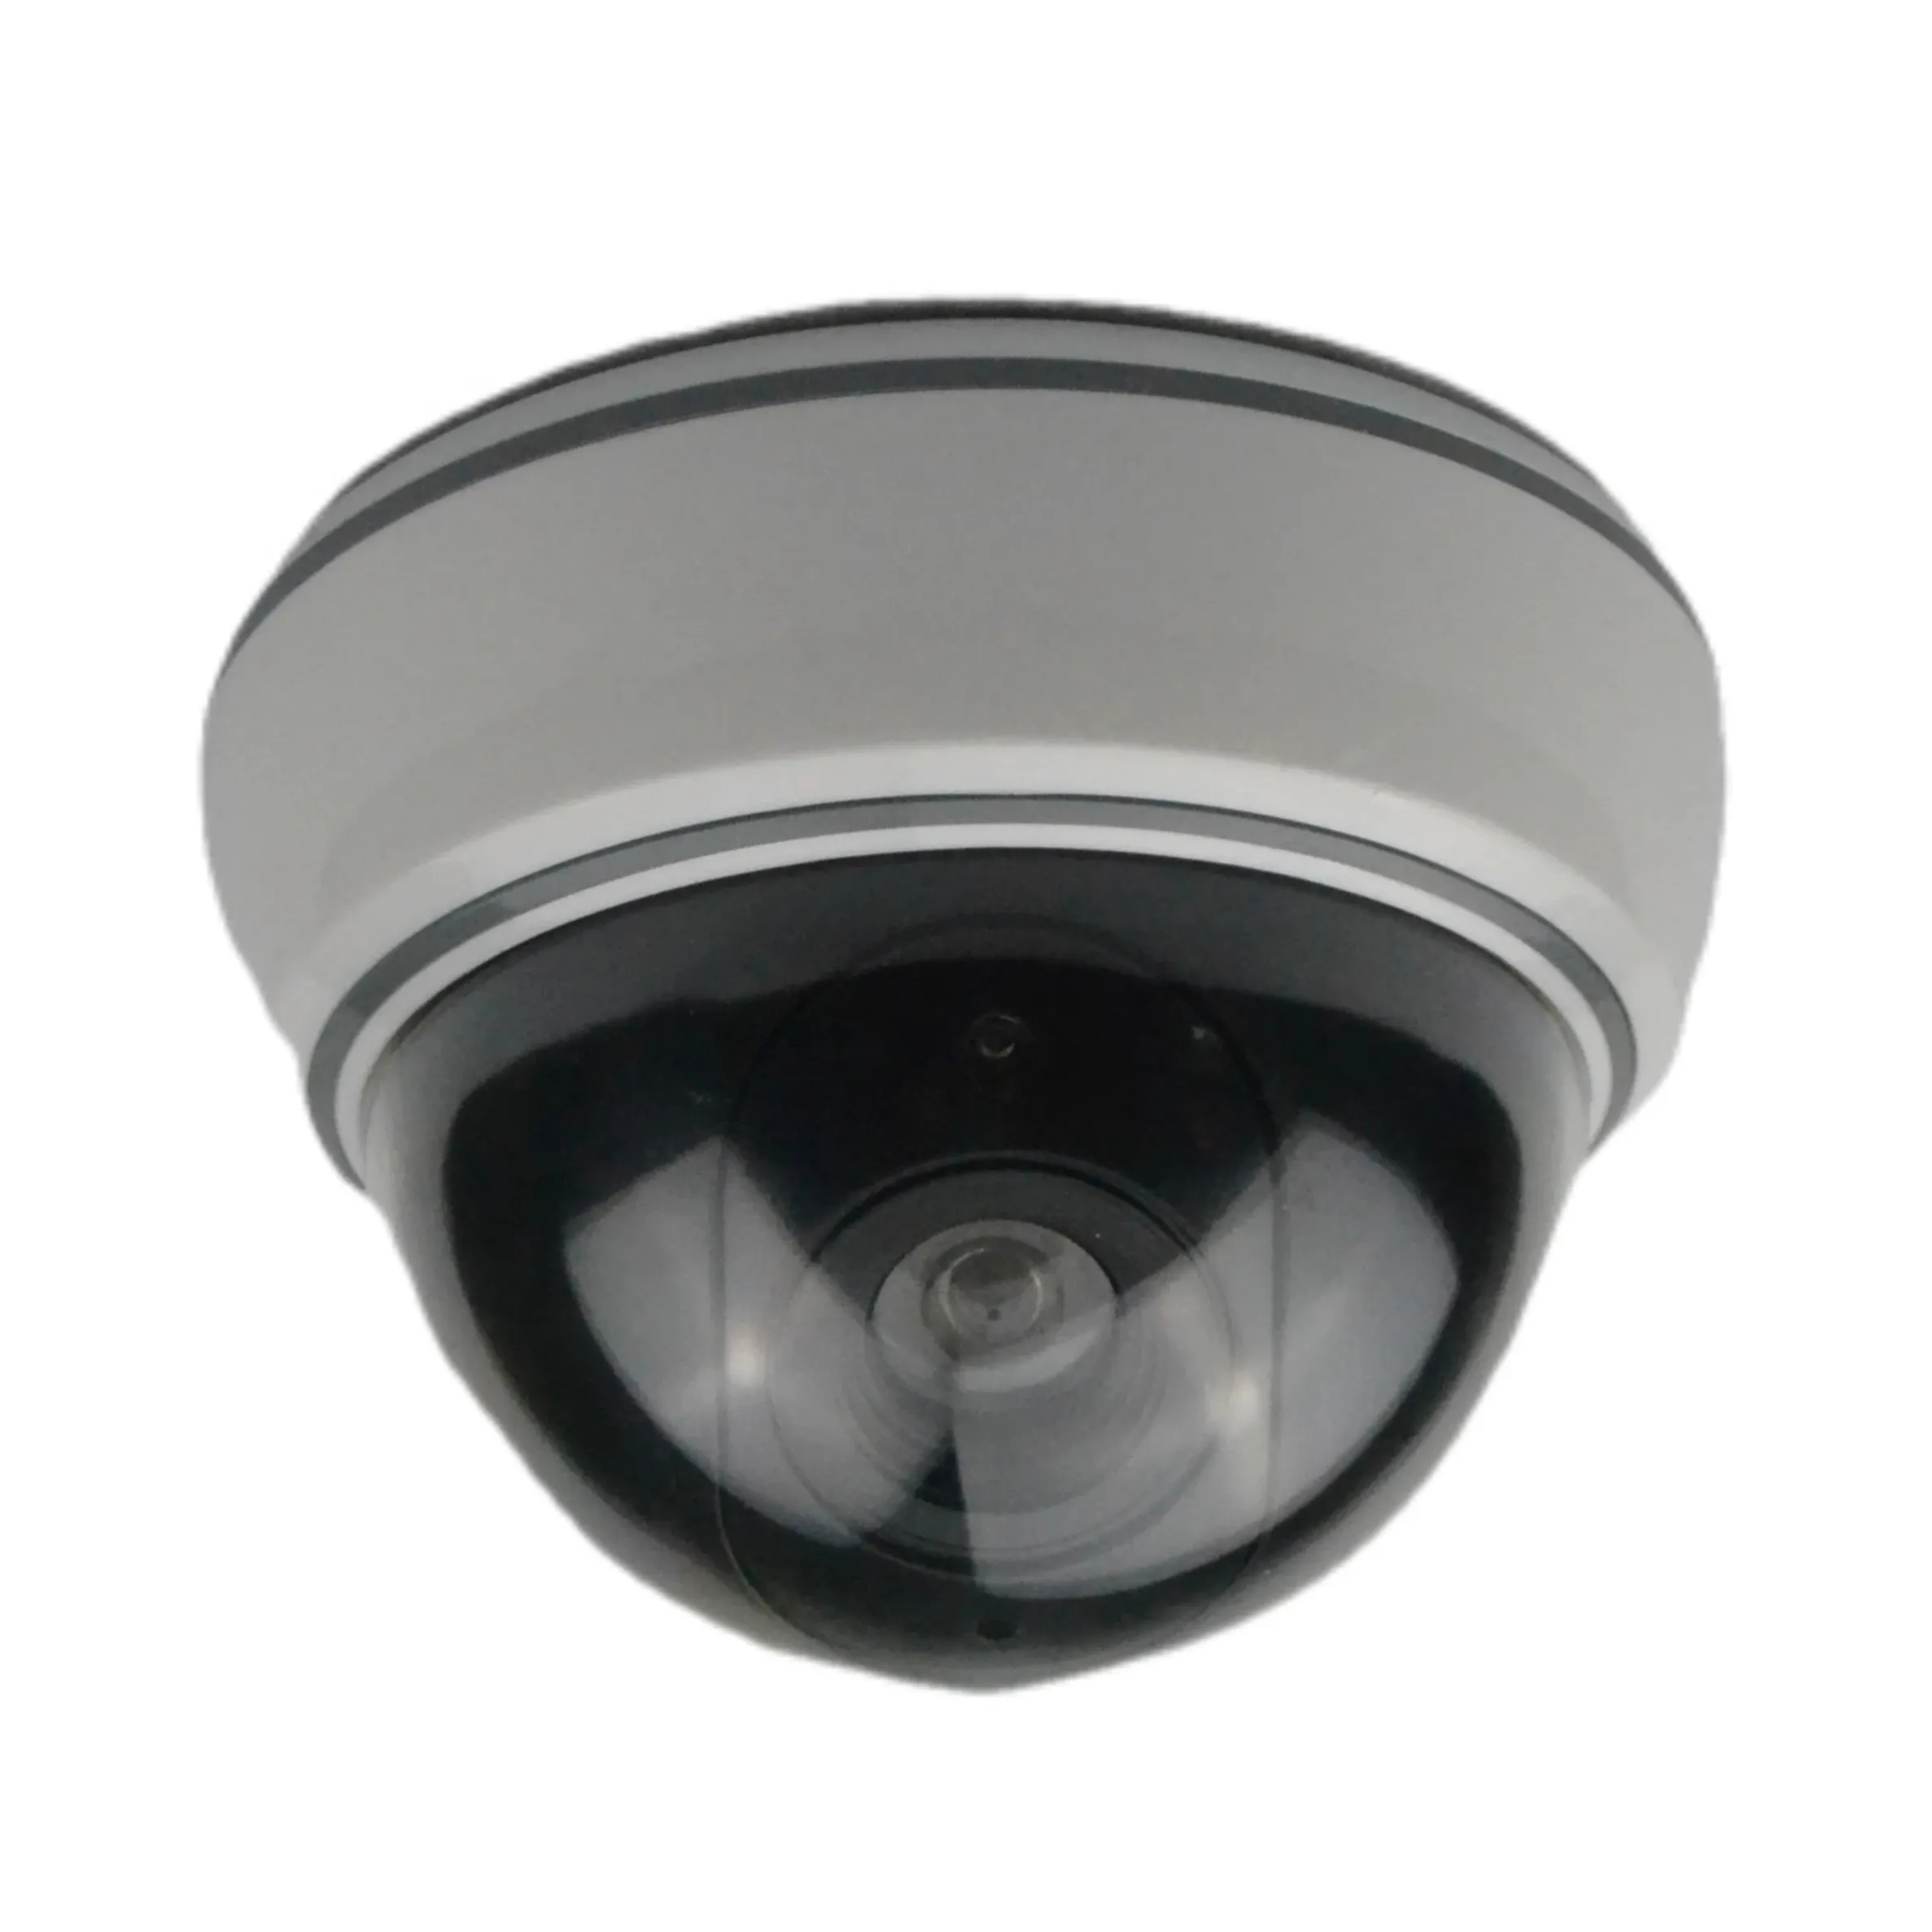 Venta caliente Domo simulado modelo de cámara de seguridad falsa interior LED parpadeo luz intermitente CCTV simulación impermeable